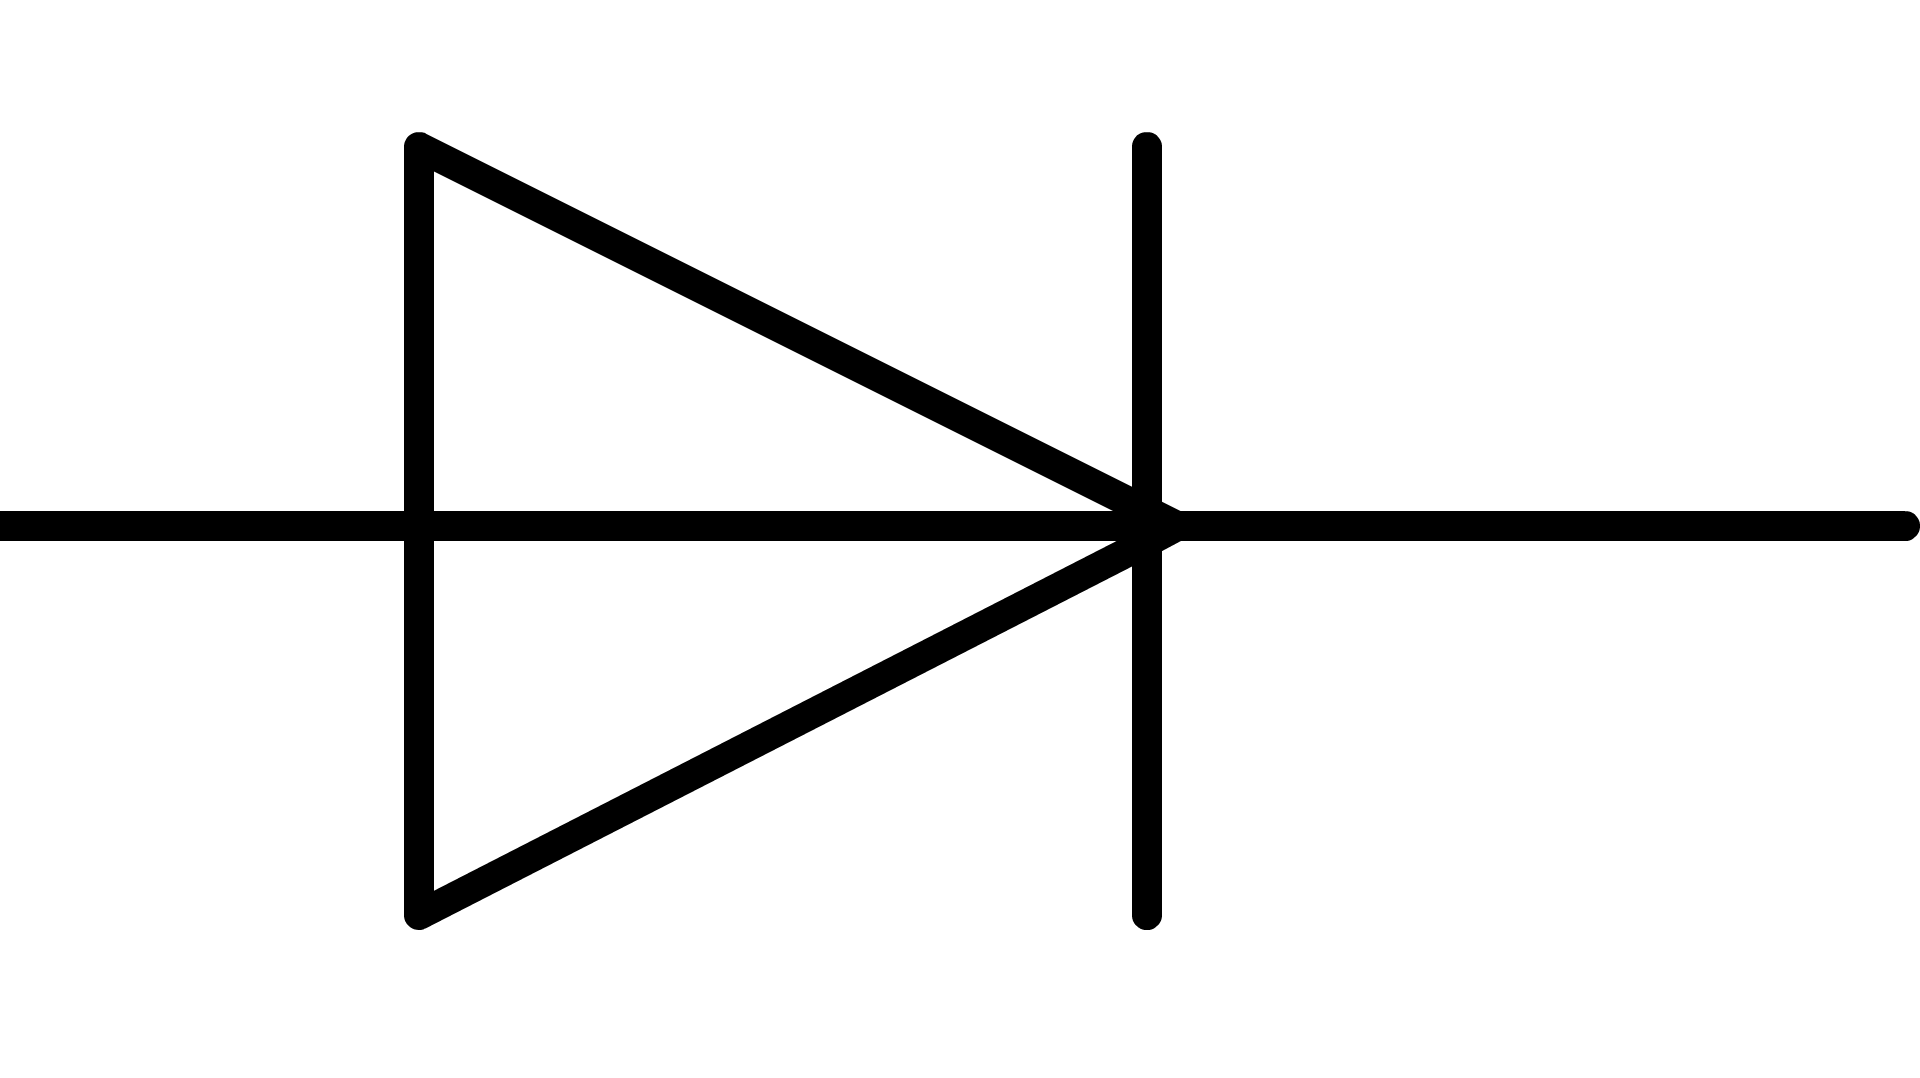 symbole normalise panneau solaire